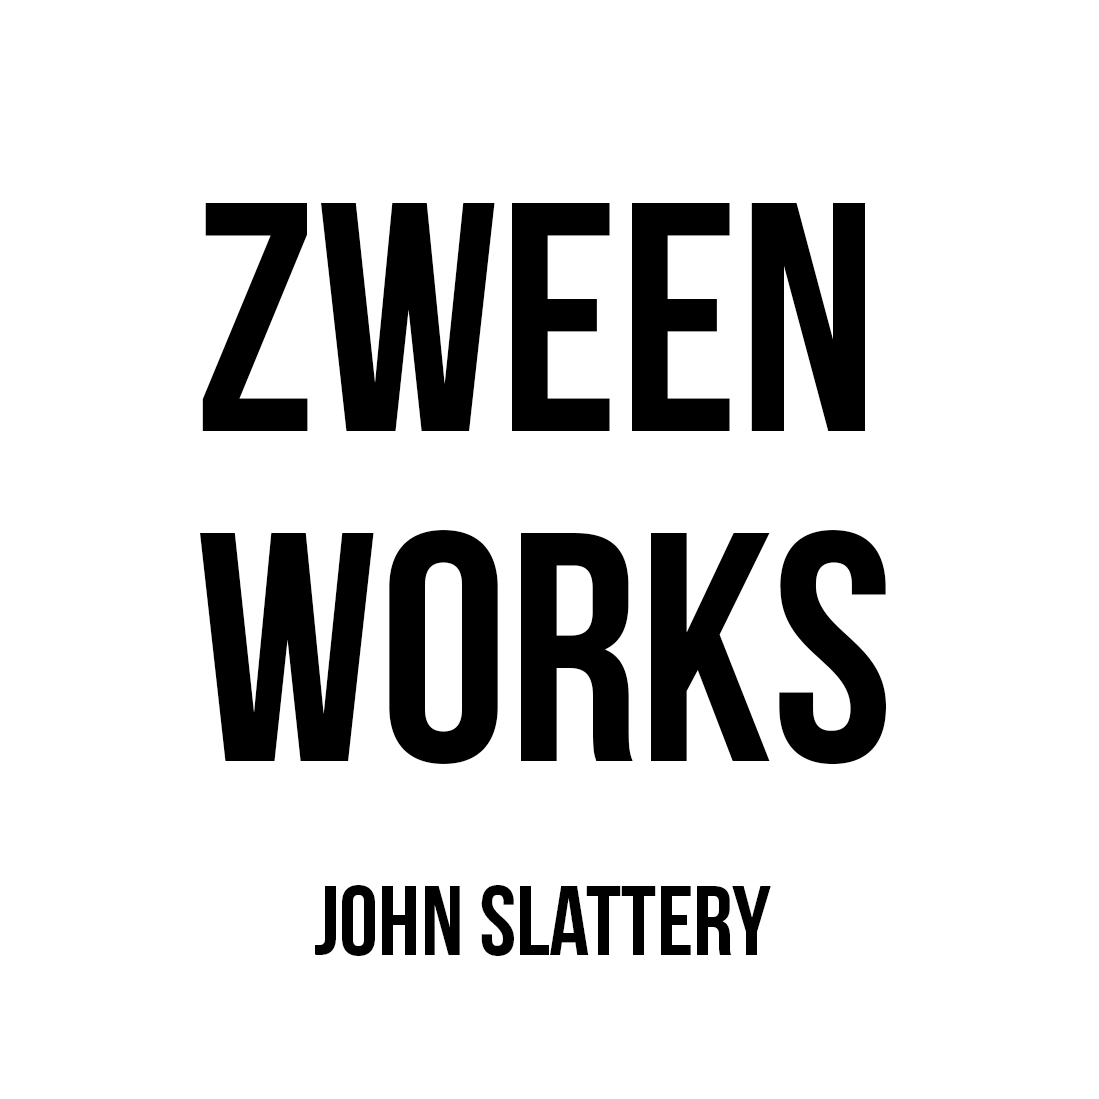 Zween Works / John Slattery